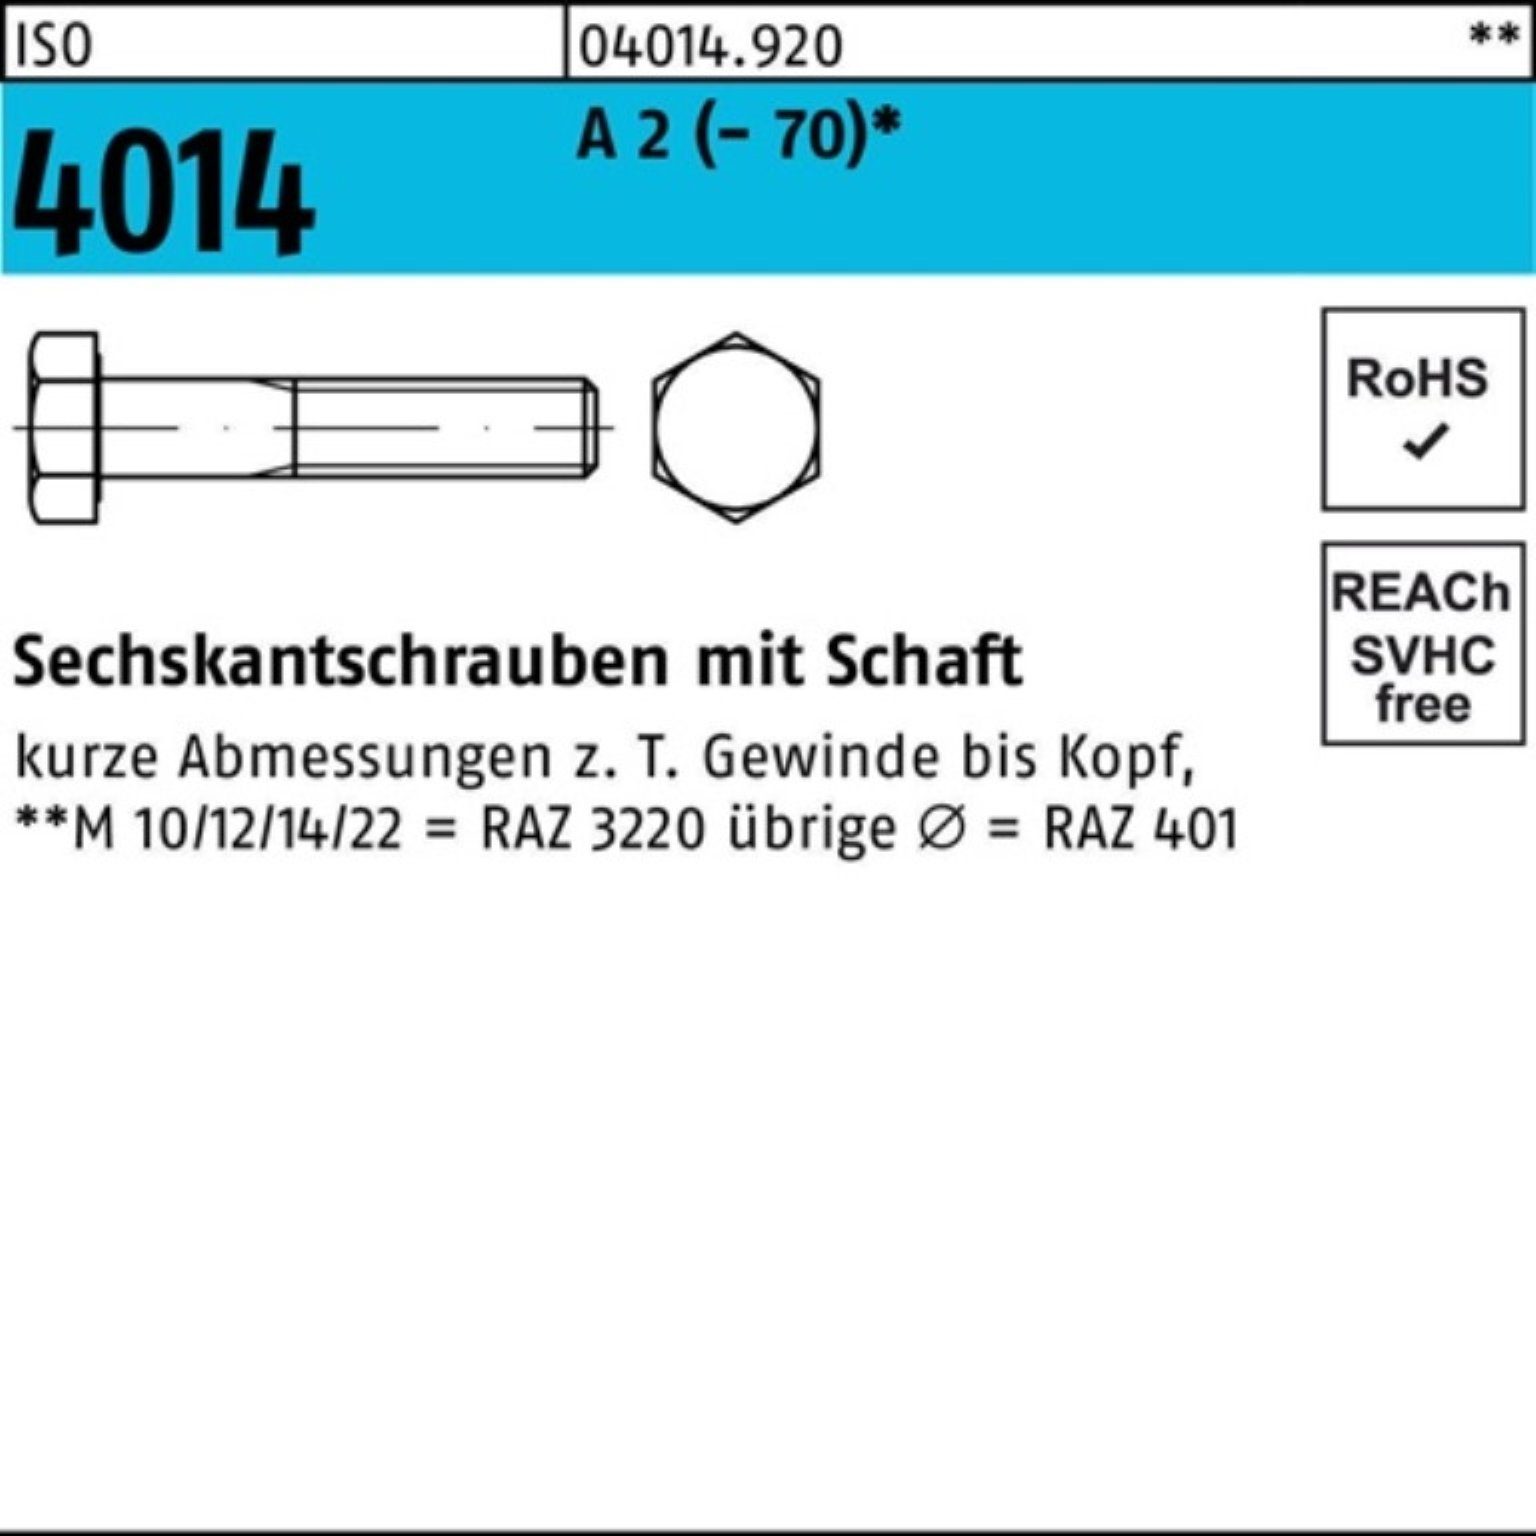 2 Pack Bufab Schaft 100 St M14x 50 A 4014 100er (70) Sechskantschraube ISO Sechskantschraube